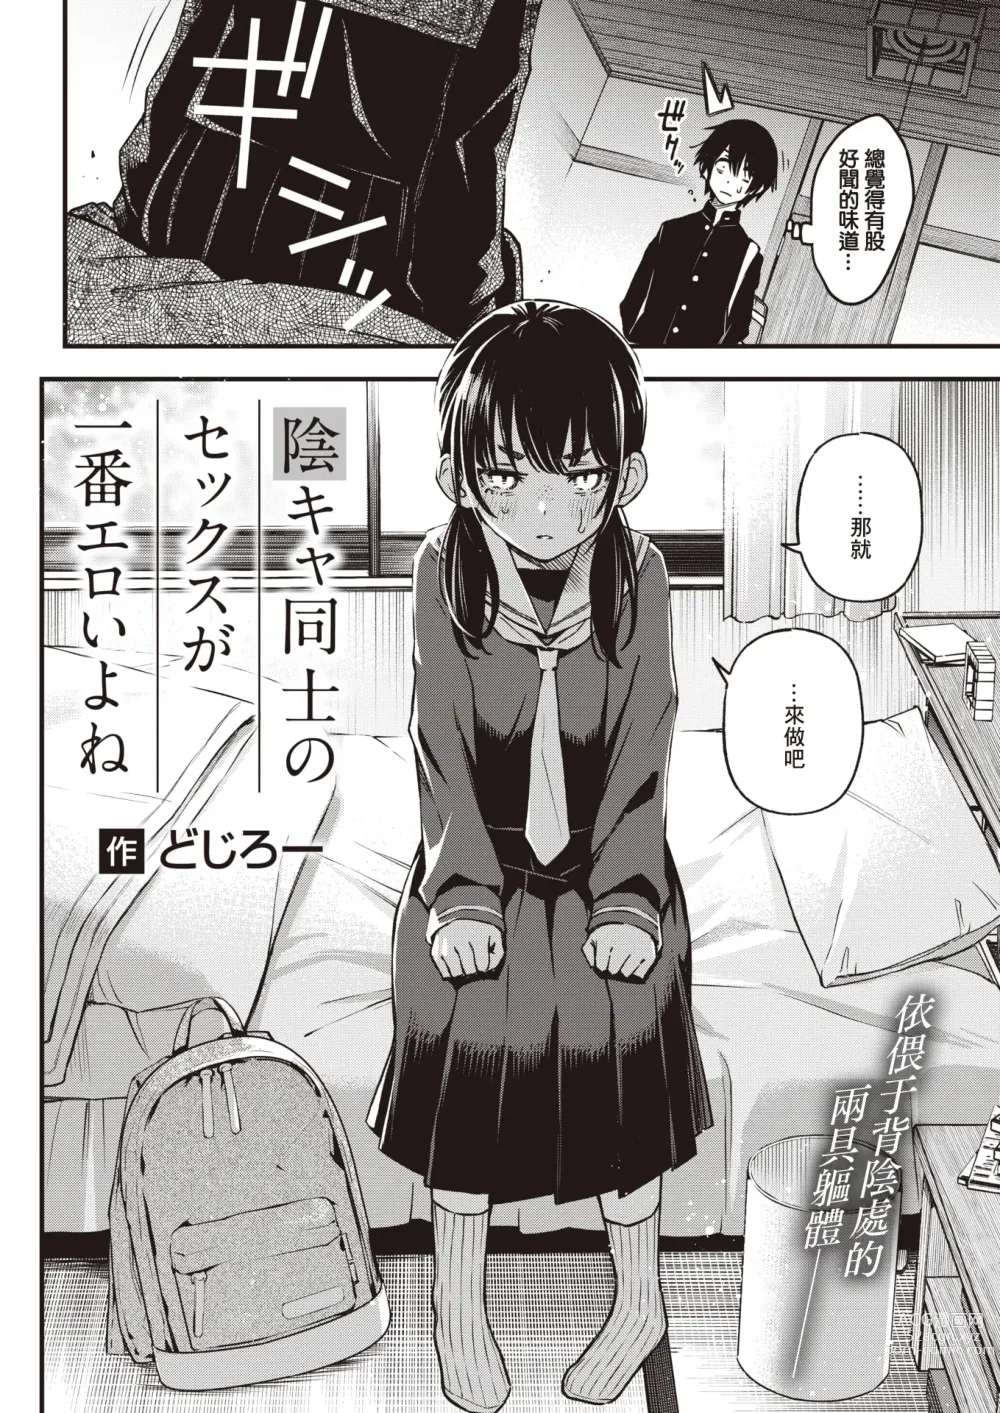 Page 3 of manga 内向友人的性爱才是最具风情的呢